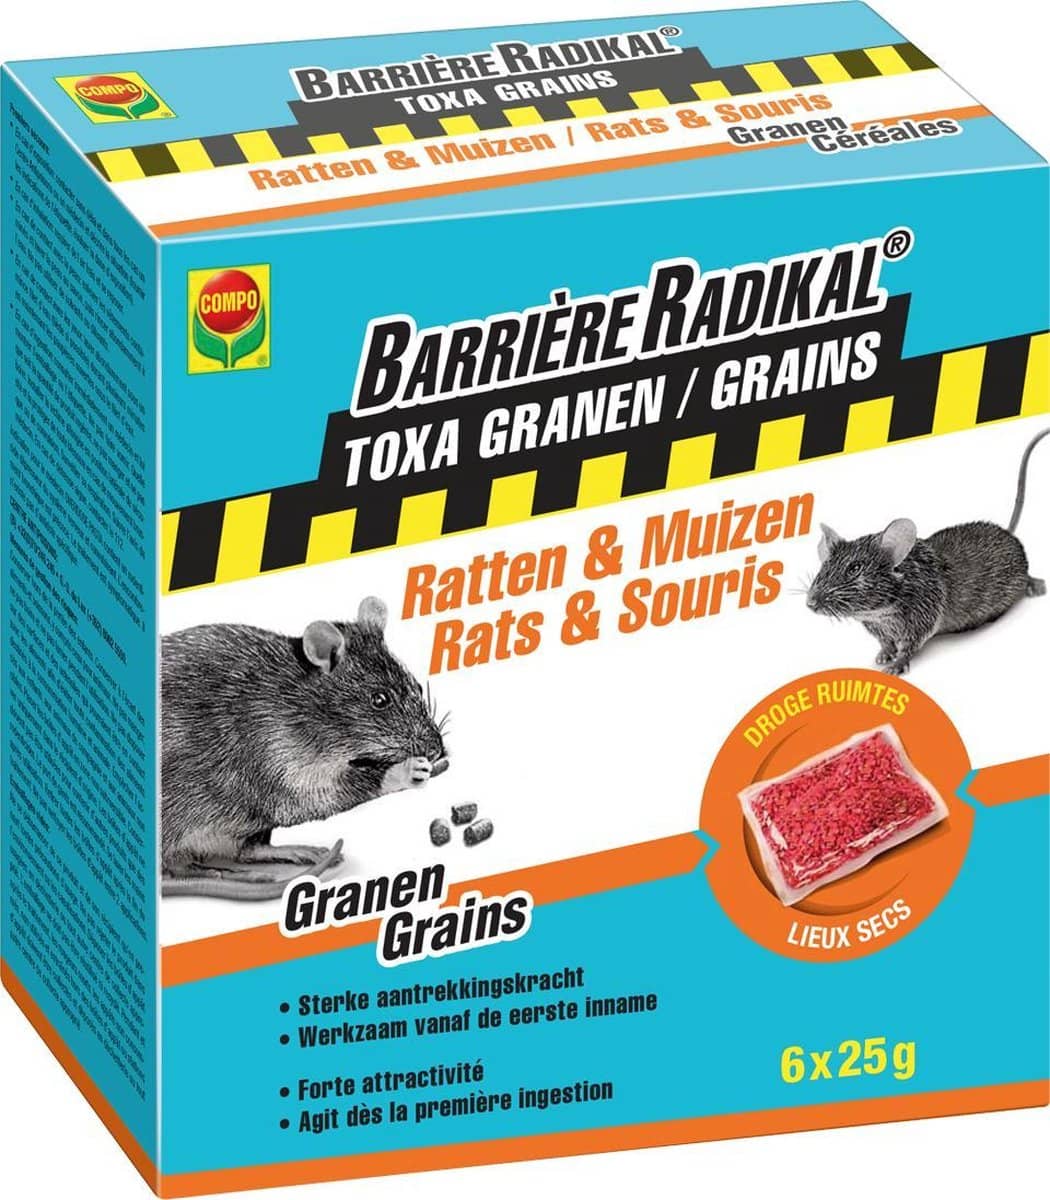 Barrière Radikal – Toxa Granen Ratten en Muizen – 6 x 25 g. Onweerstaanbaar voor ratten en muizen